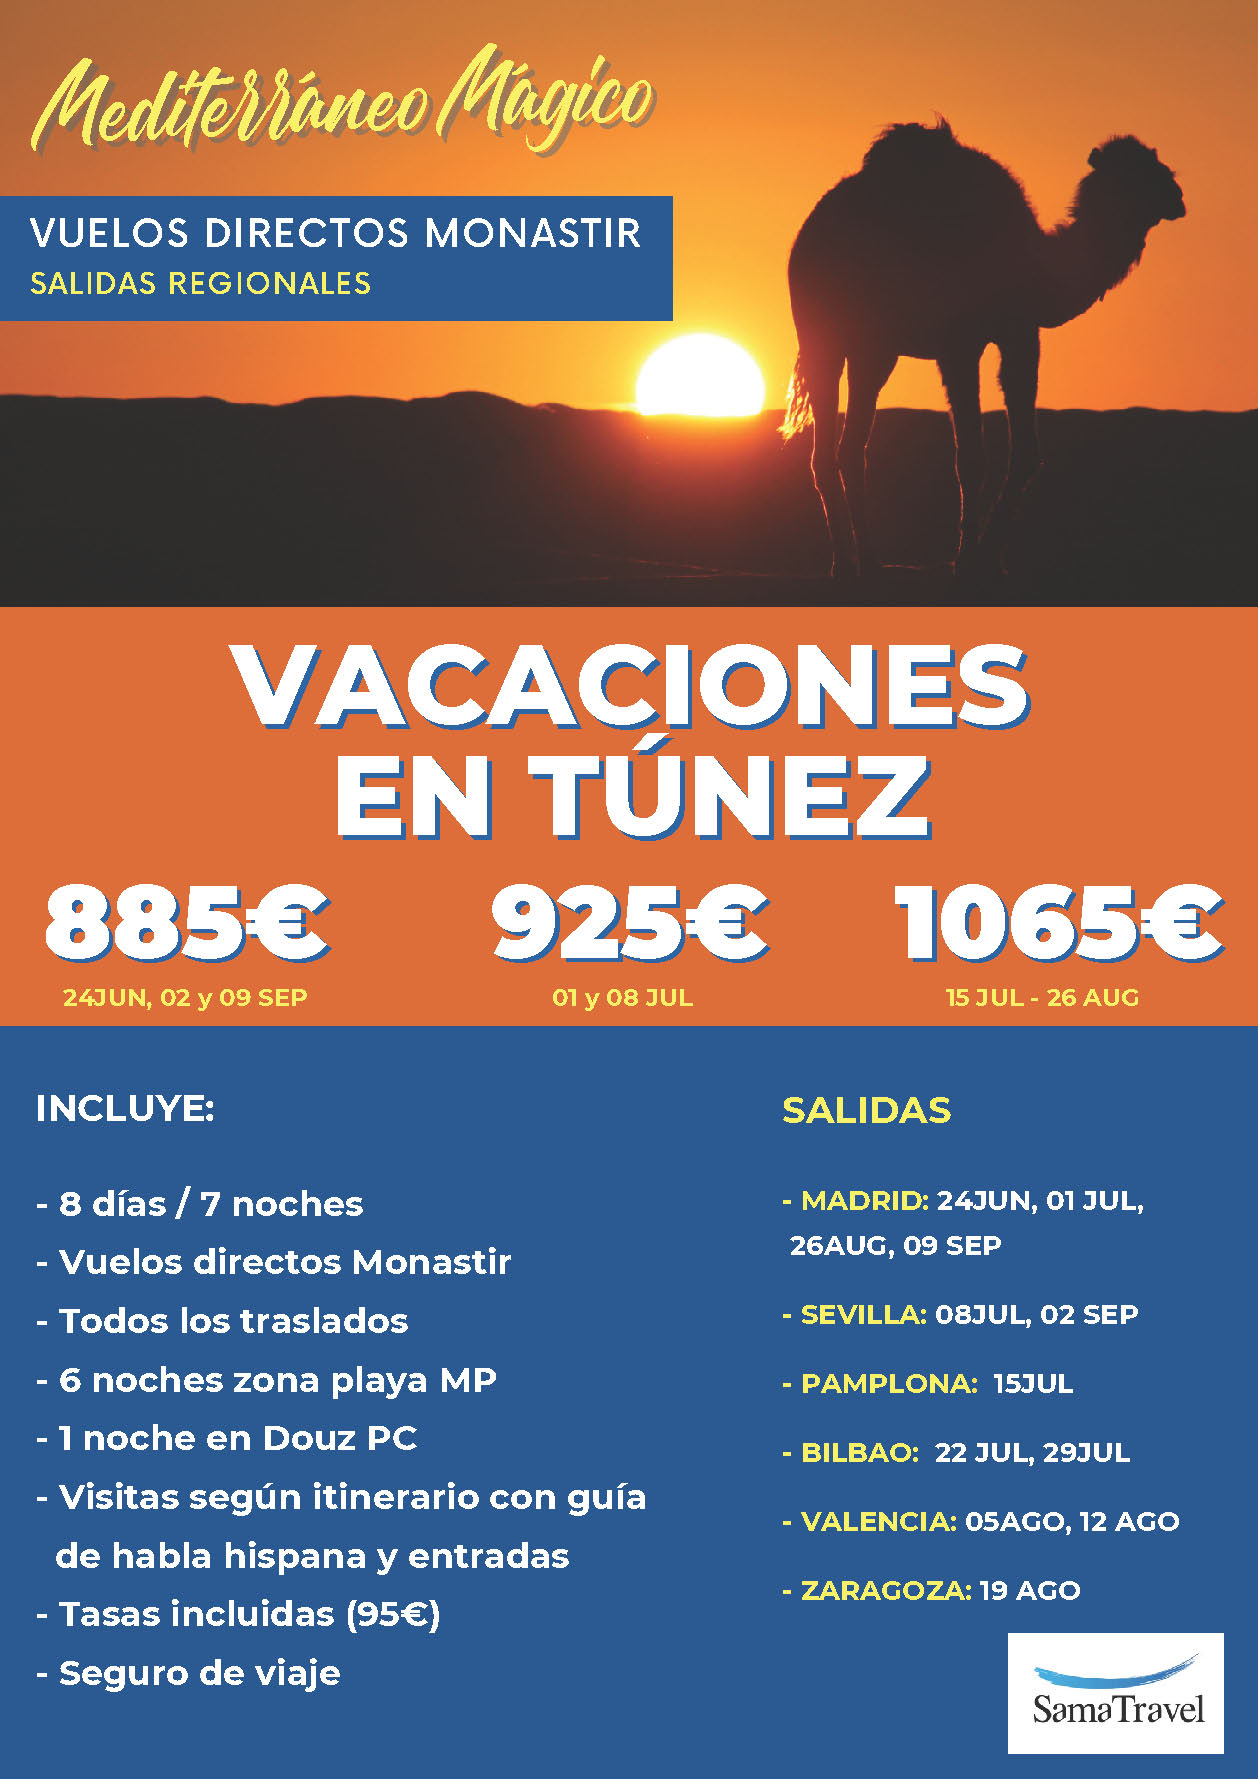 Oferta Sama Travel Verano 2023 Vacaciones en Tunez 8 dias MP salidas en vuelos especiales directos desde Madrid Bilbao Valencia Sevilla Zaragoza Pamplona